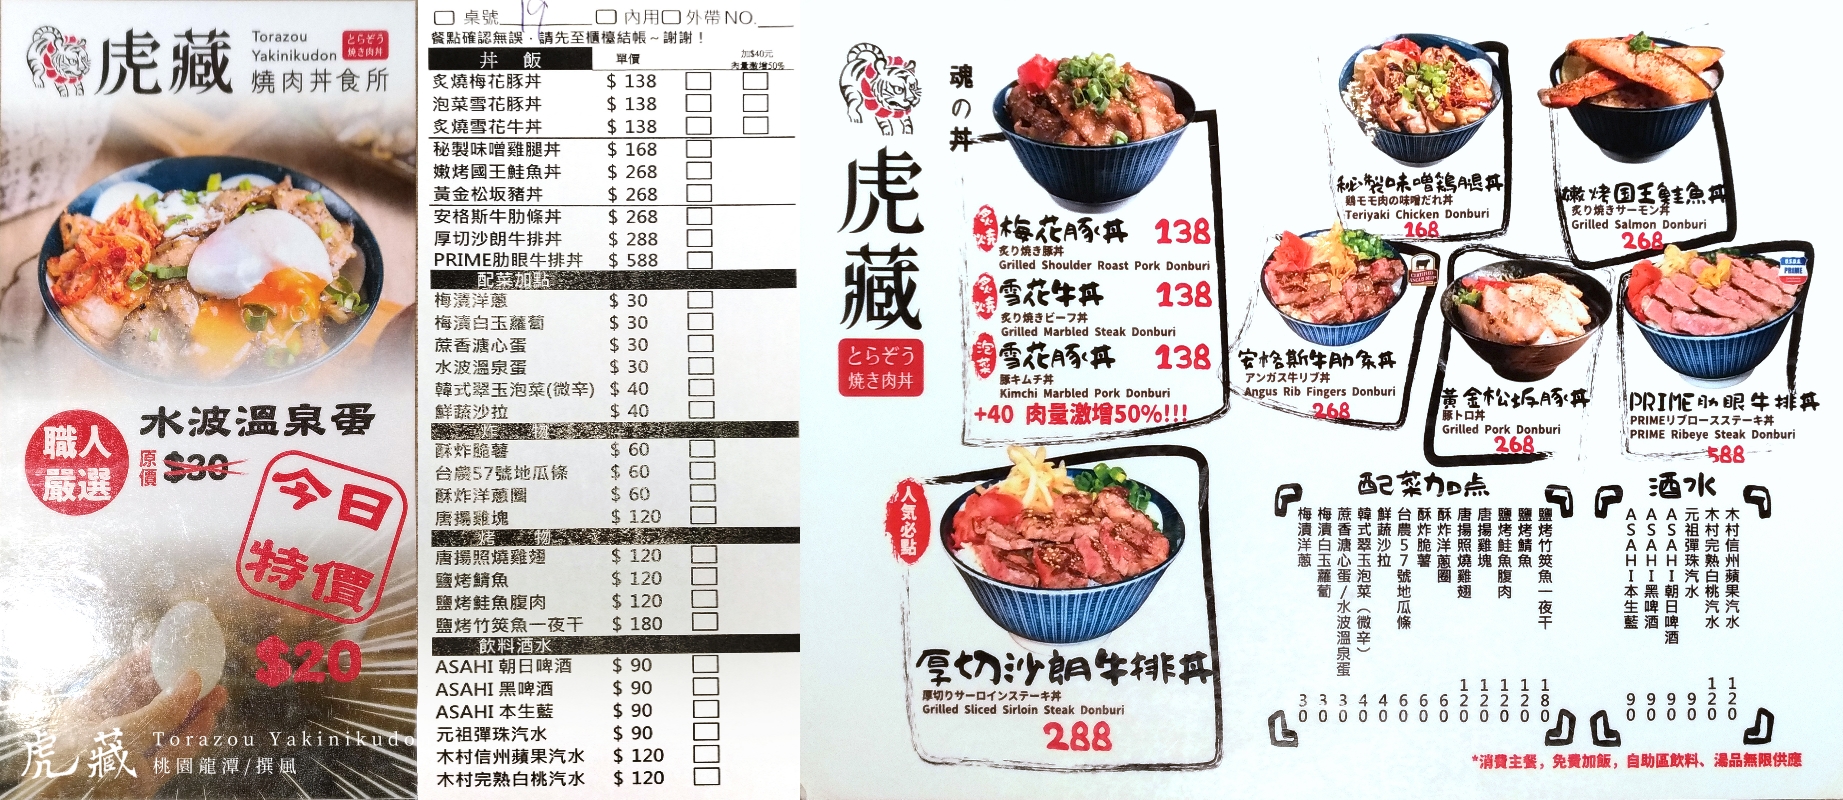 虎藏燒肉丼食飯(torazou-yakinikudon)-menu